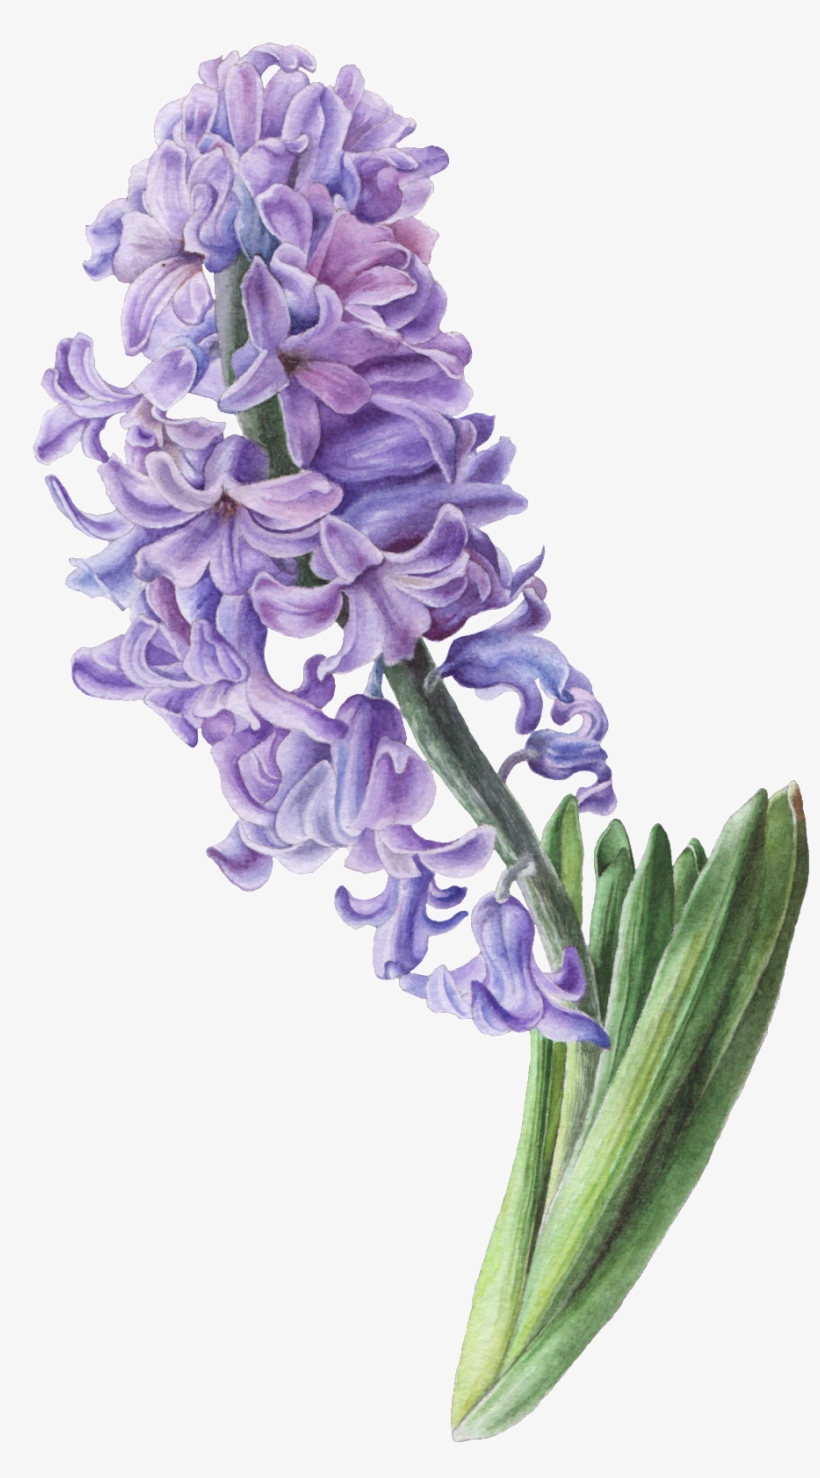 Pintado A Mano De Una Cadena De Hyacinth Png Transparente - Hyacinth Illustration, transparent png #4046573